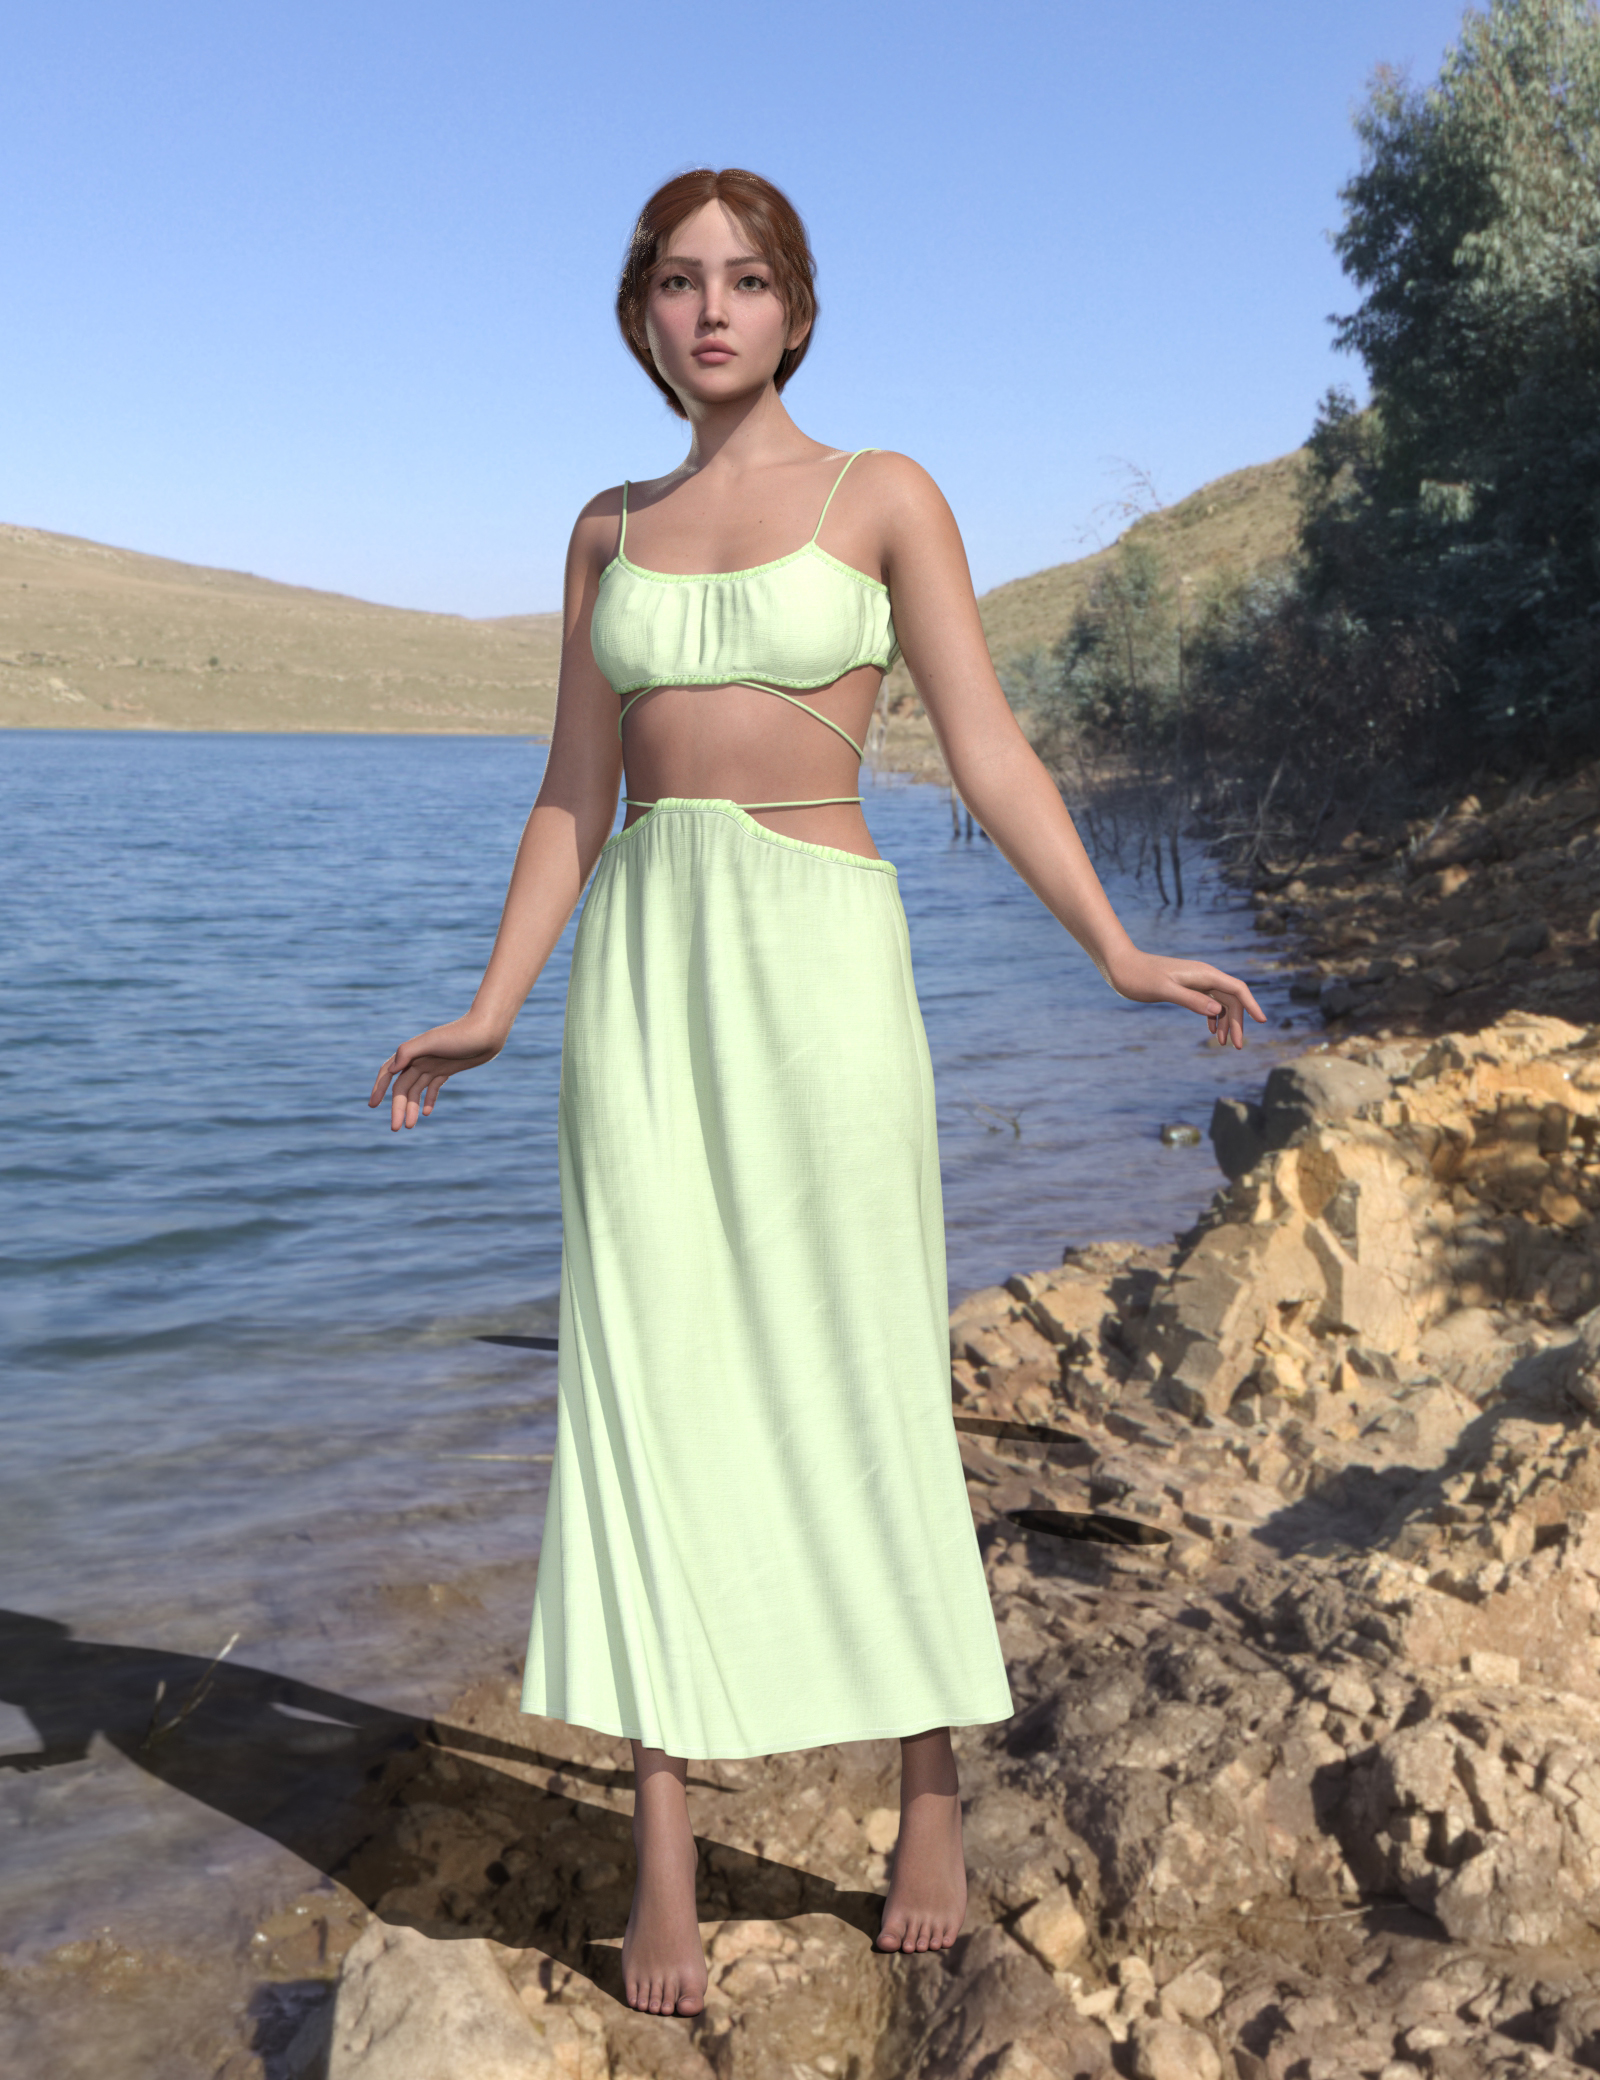 dForce MK Casual Crop Top Long Skirt for Genesis 9 by: wsmonkeyking, 3D Models by Daz 3D